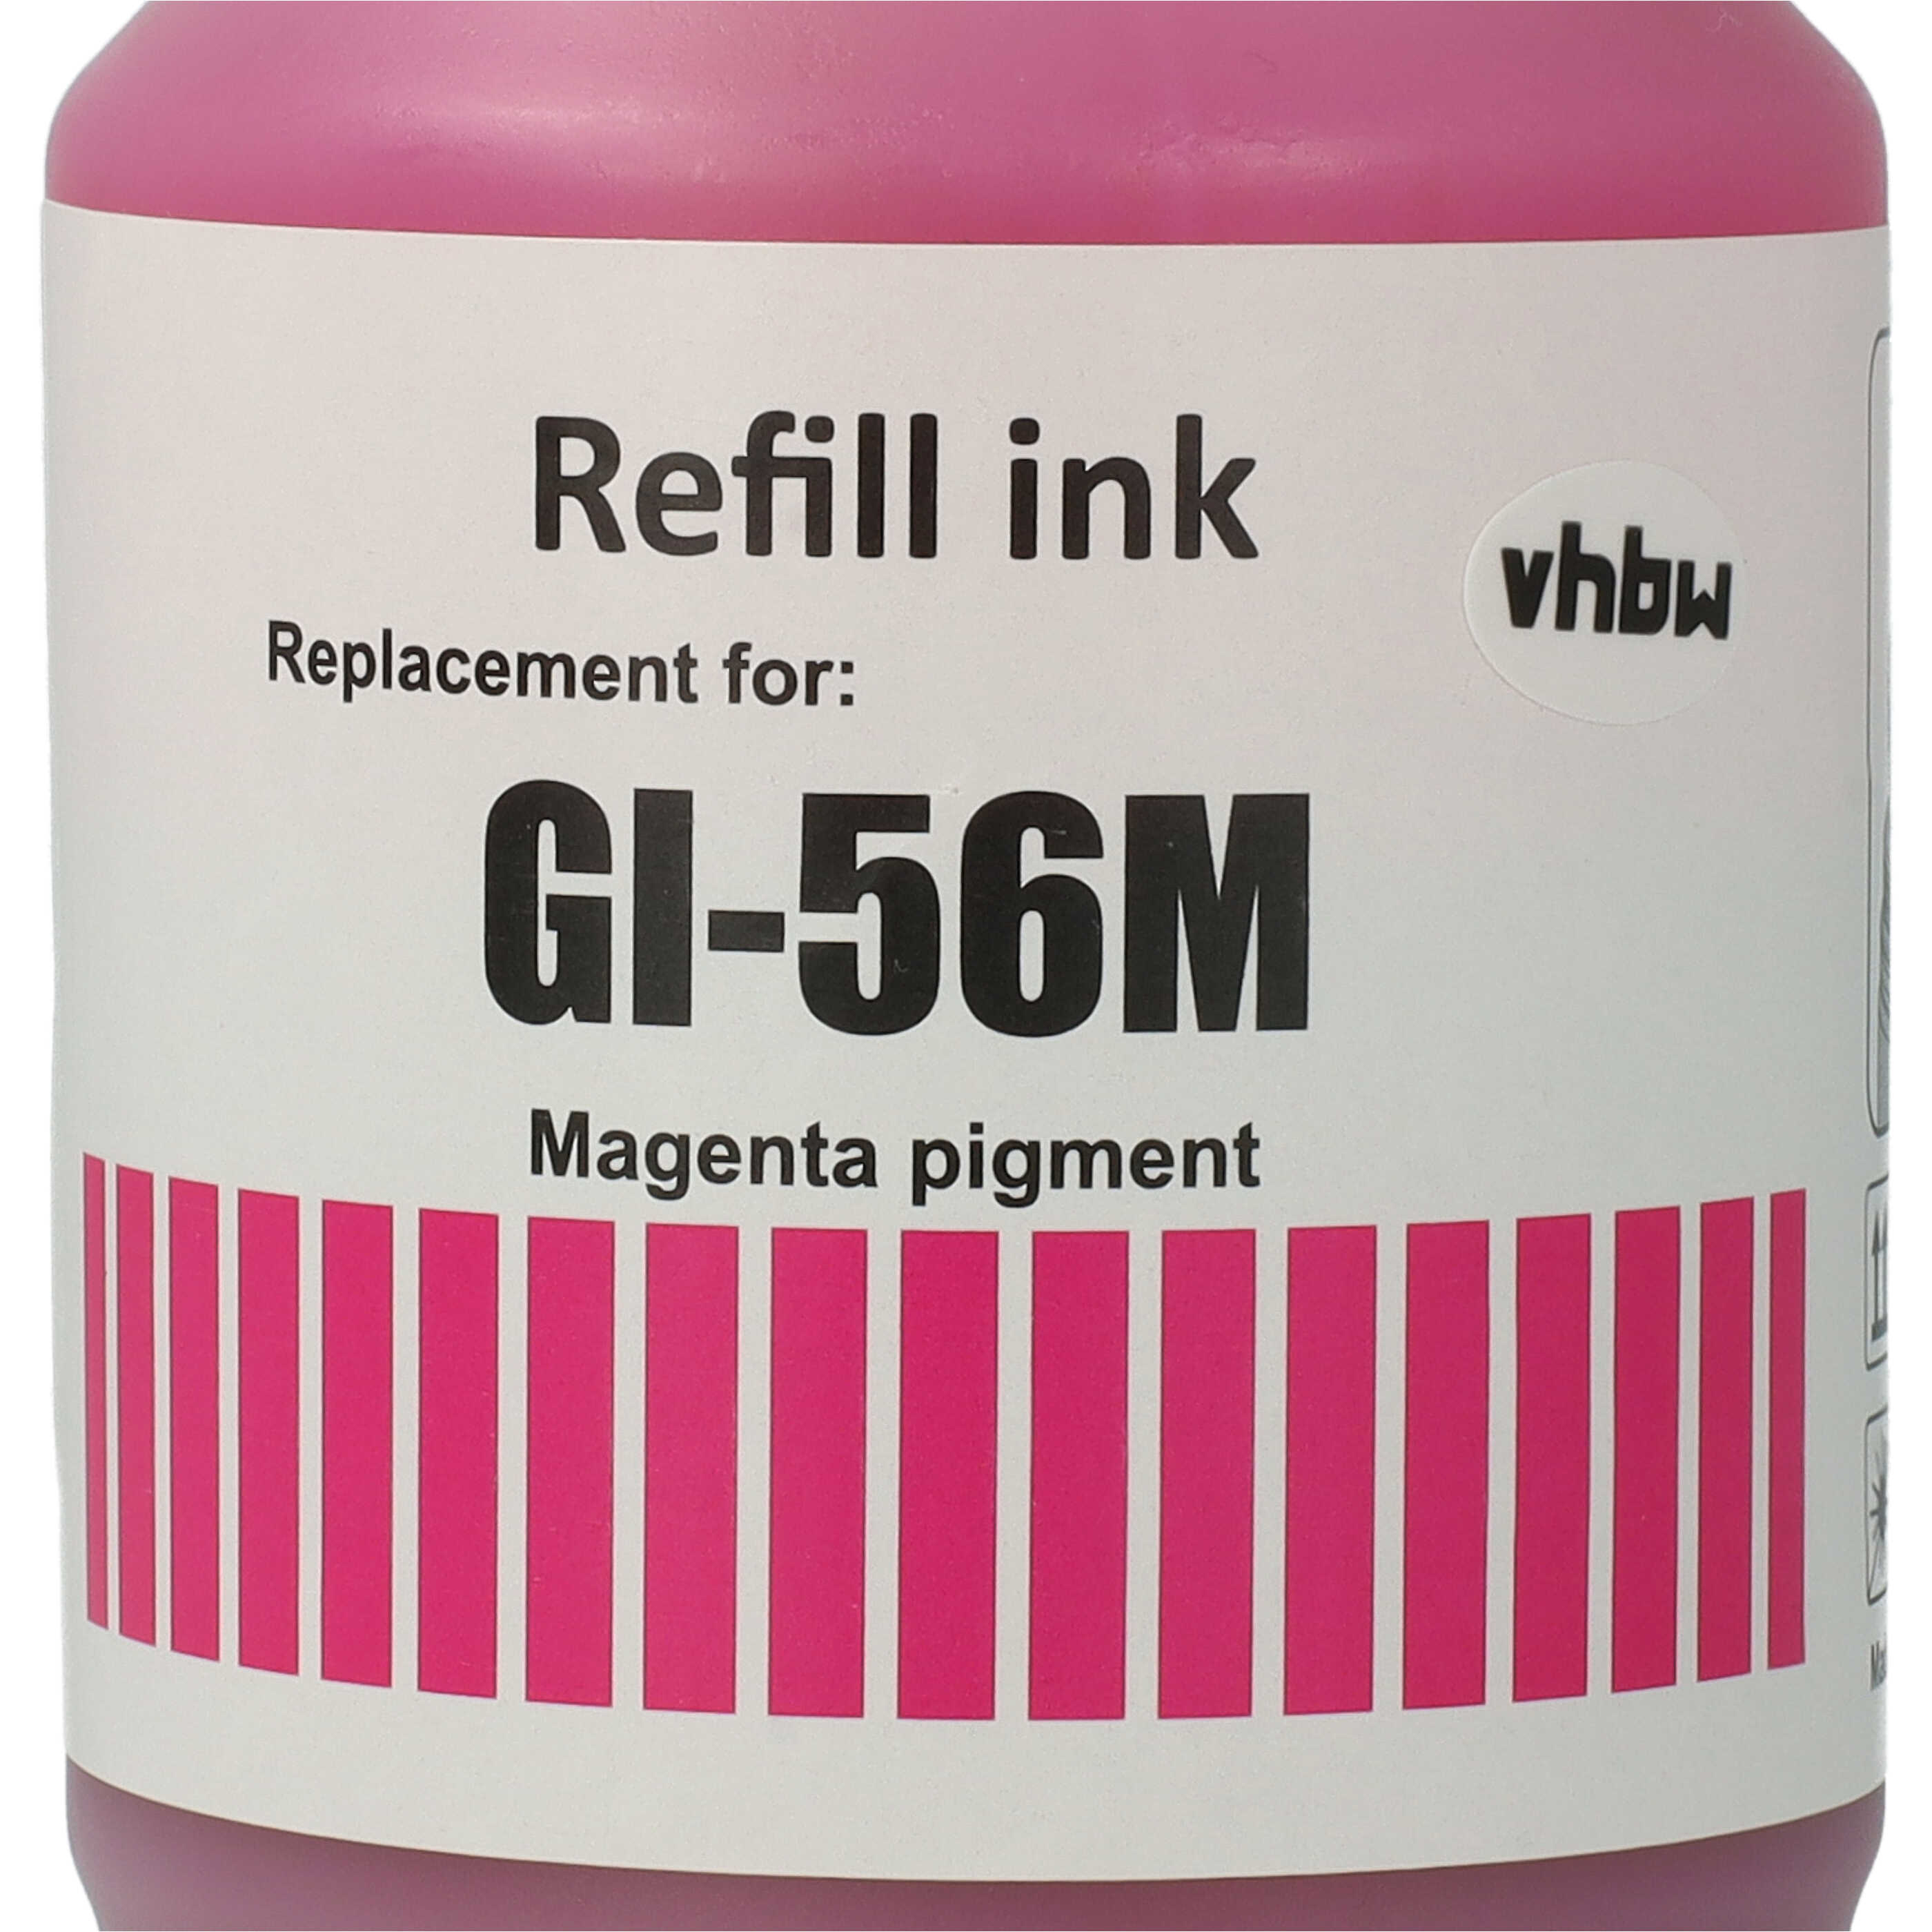 Encre rechargable Magenta remplace Canon 4431C001, GI-56M pour imprimante Canon - Pigmentée, 135ml